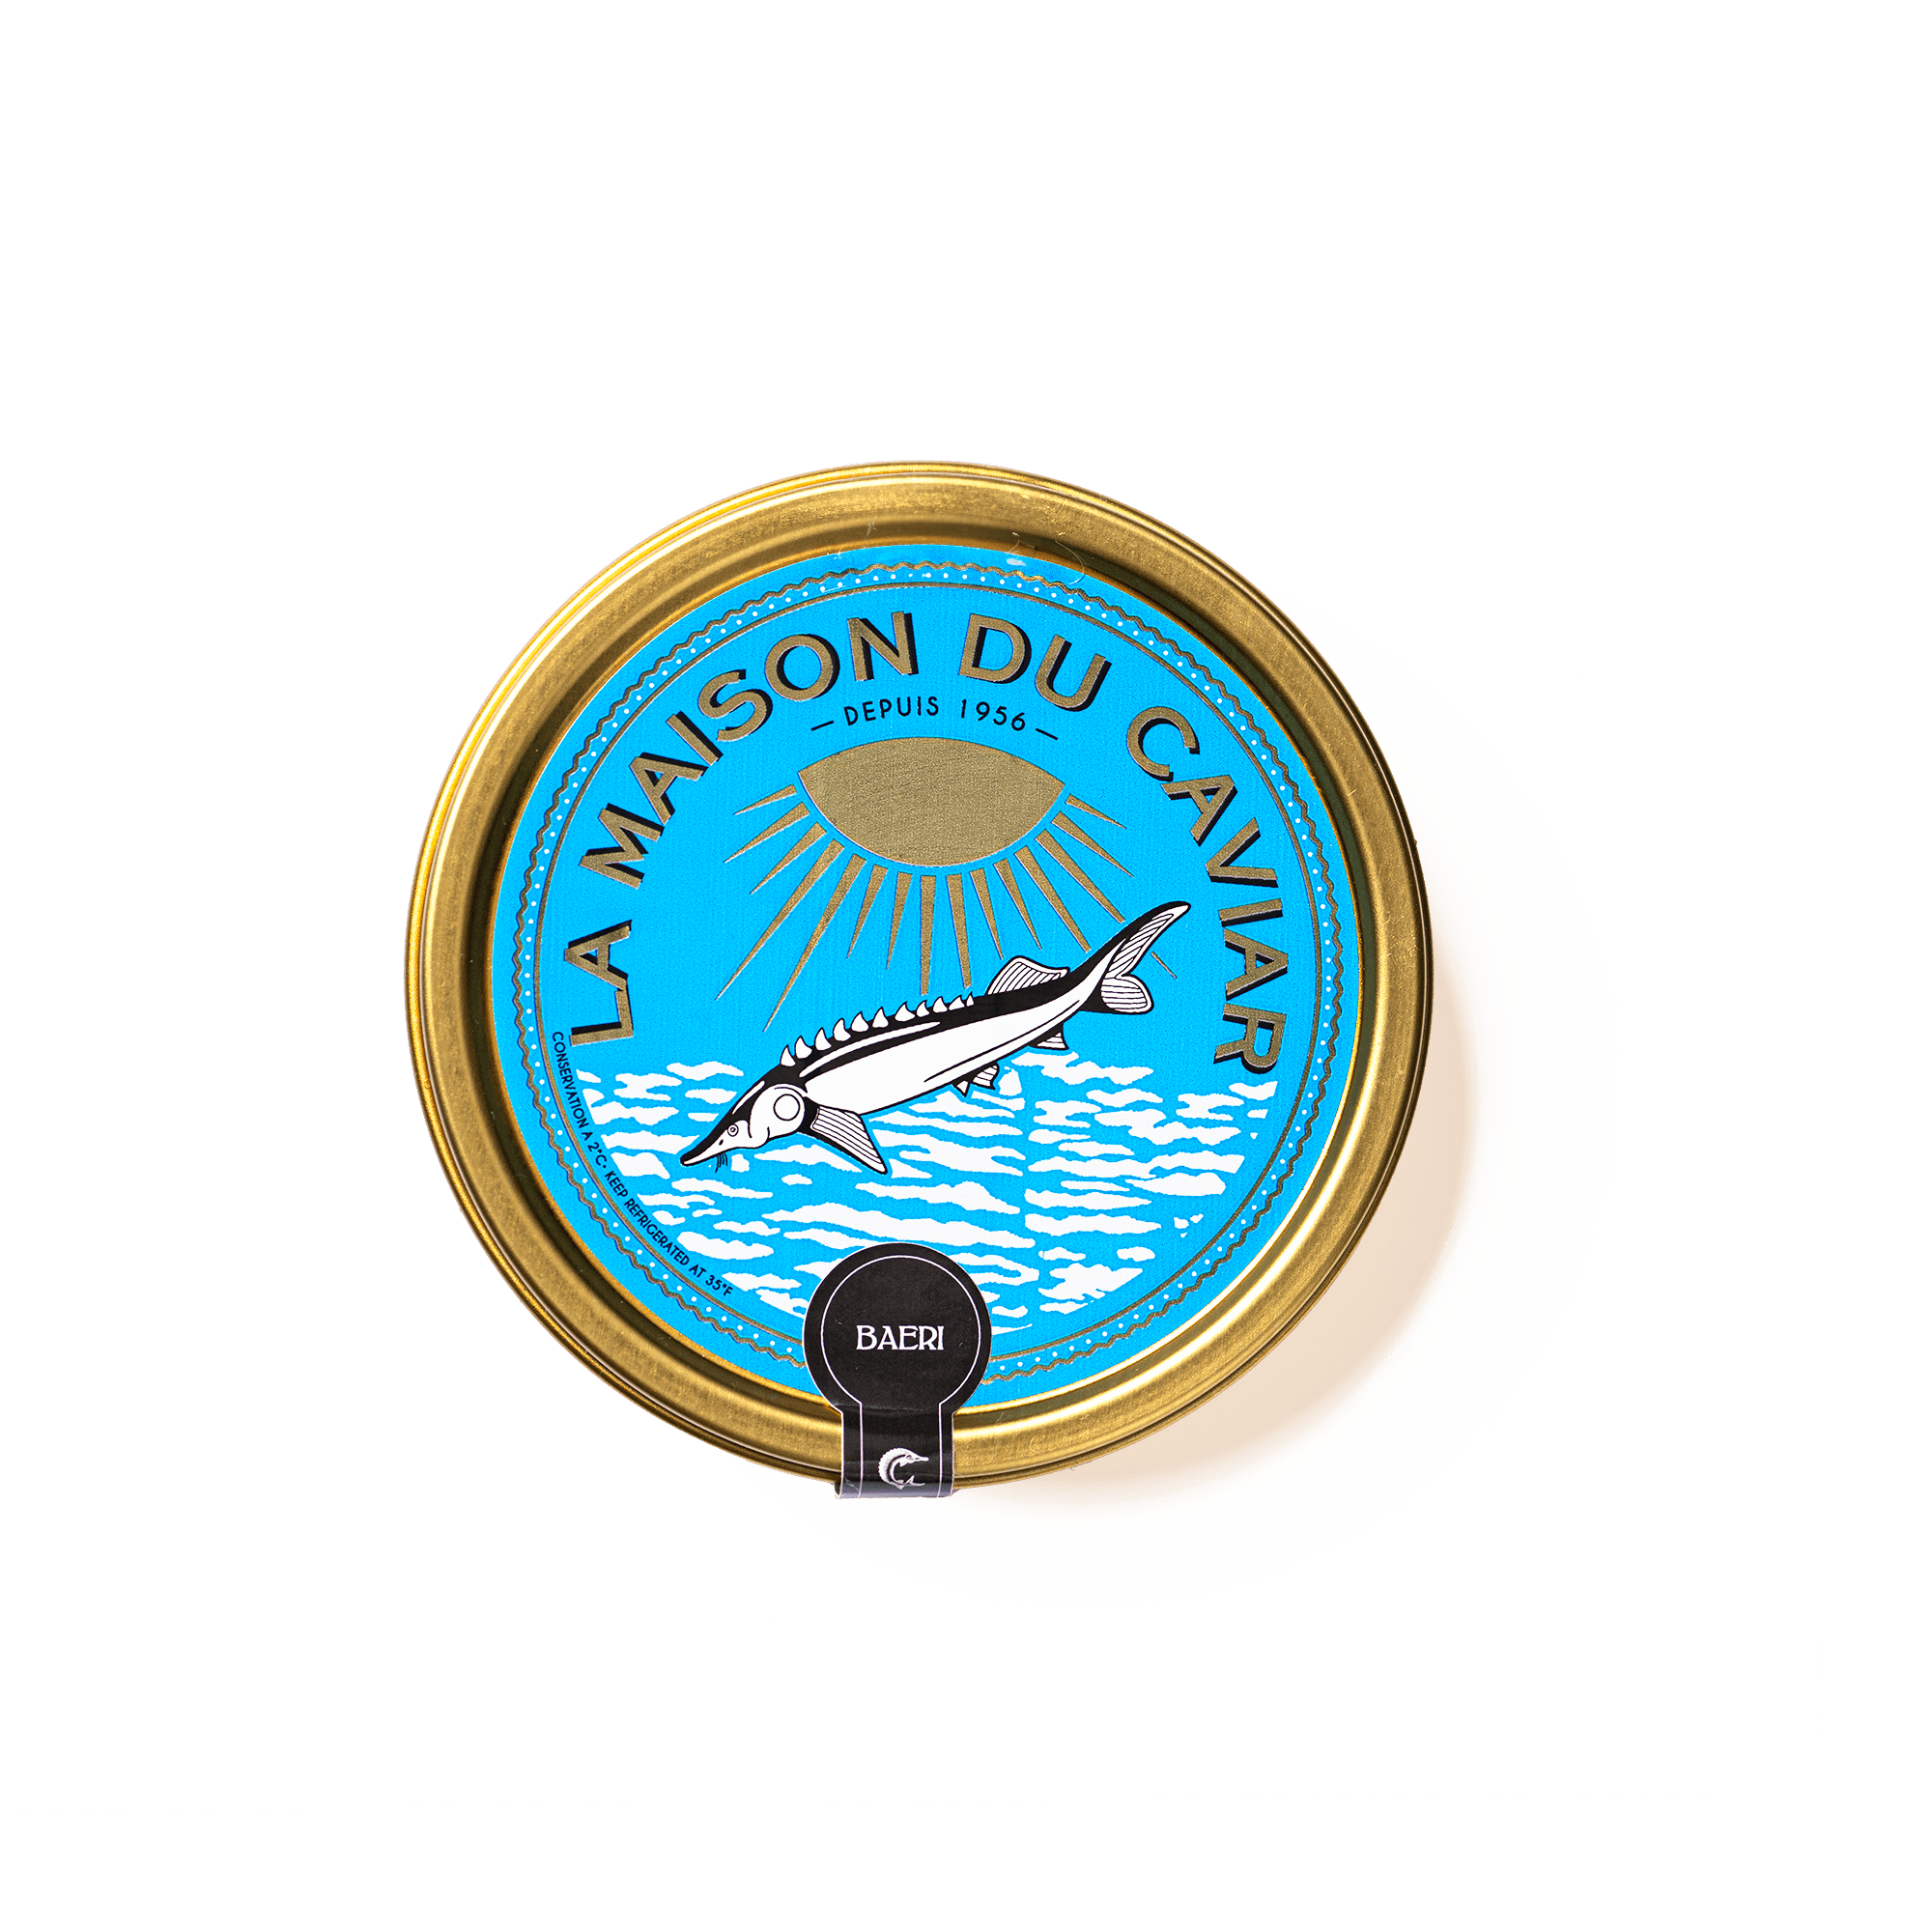 Le Caviar Oscietre français 50g